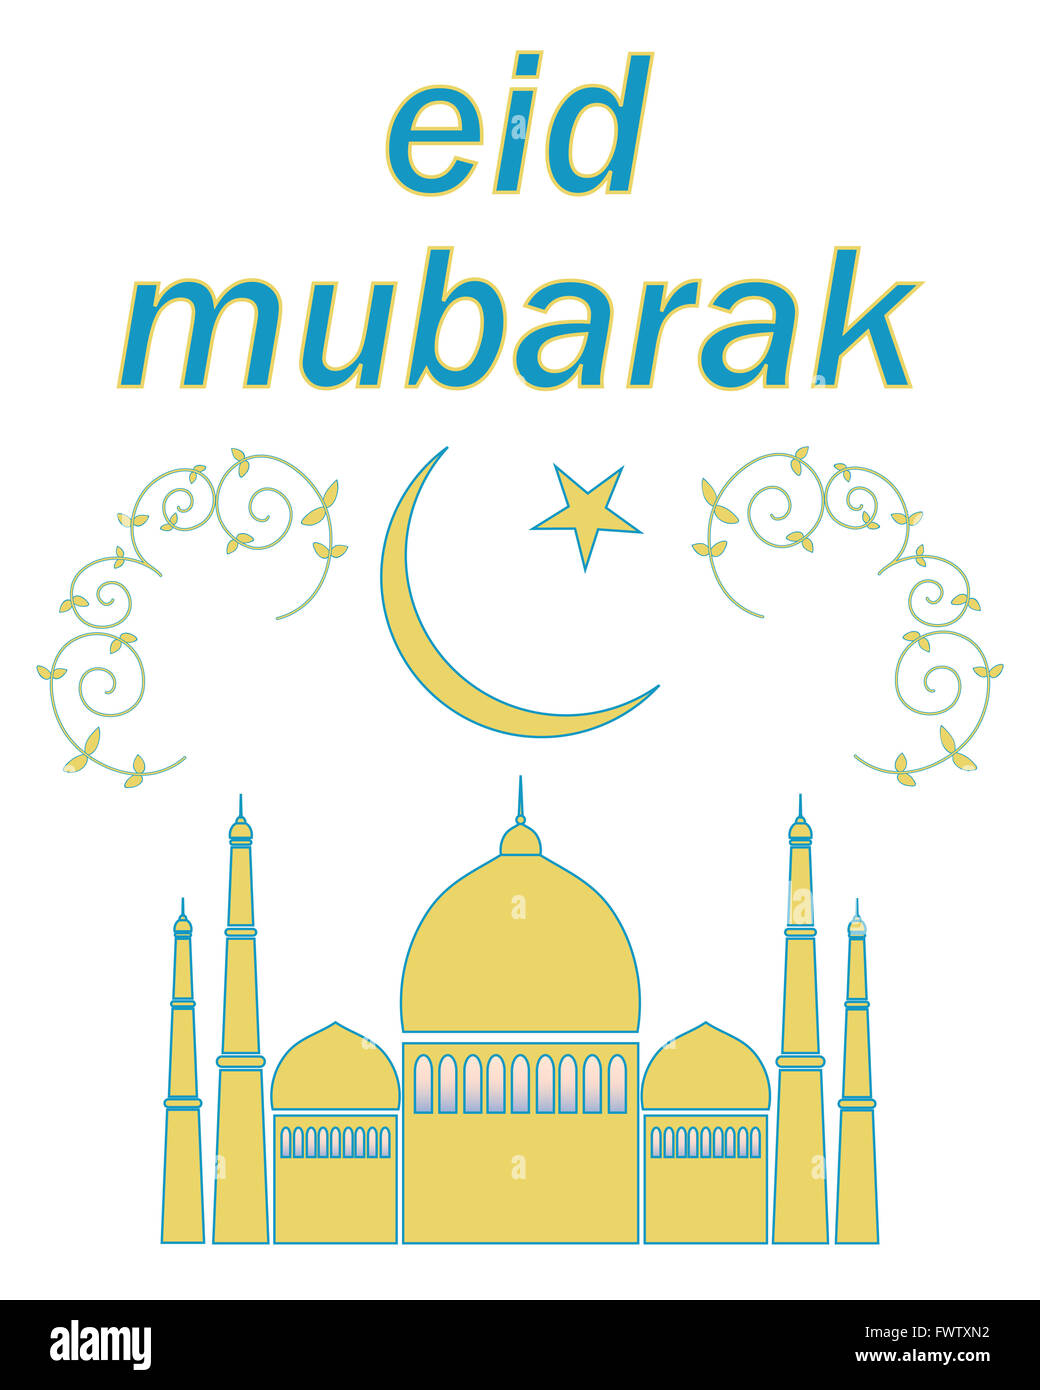 Une illustration d'une carte de vœux de l'Aïd avec un croissant de lune et étoile de la mosquée et de la décoration sur un fond blanc Banque D'Images